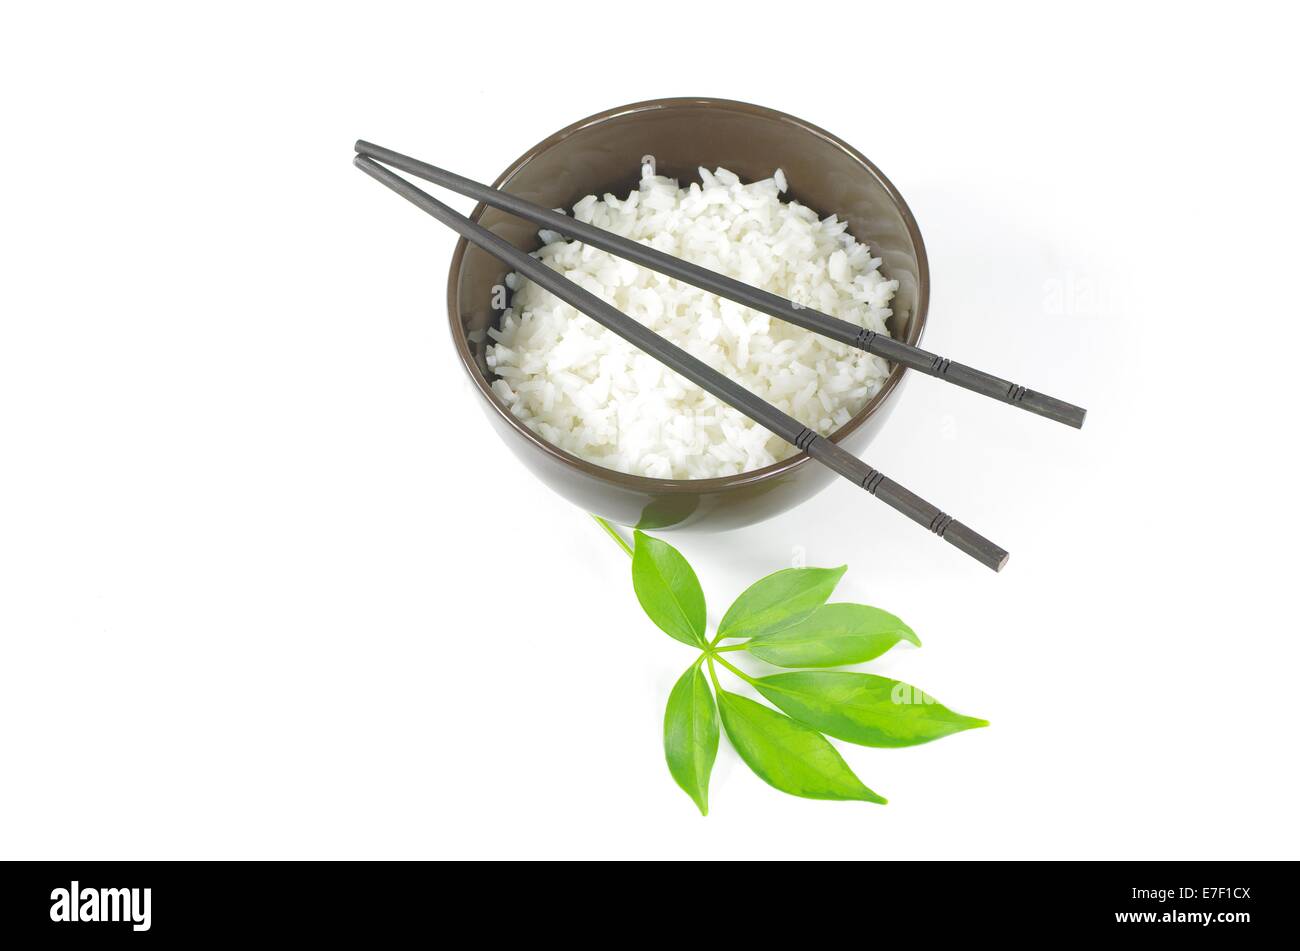 Il bastone e il riso nel recipiente su sfondo bianco Foto Stock